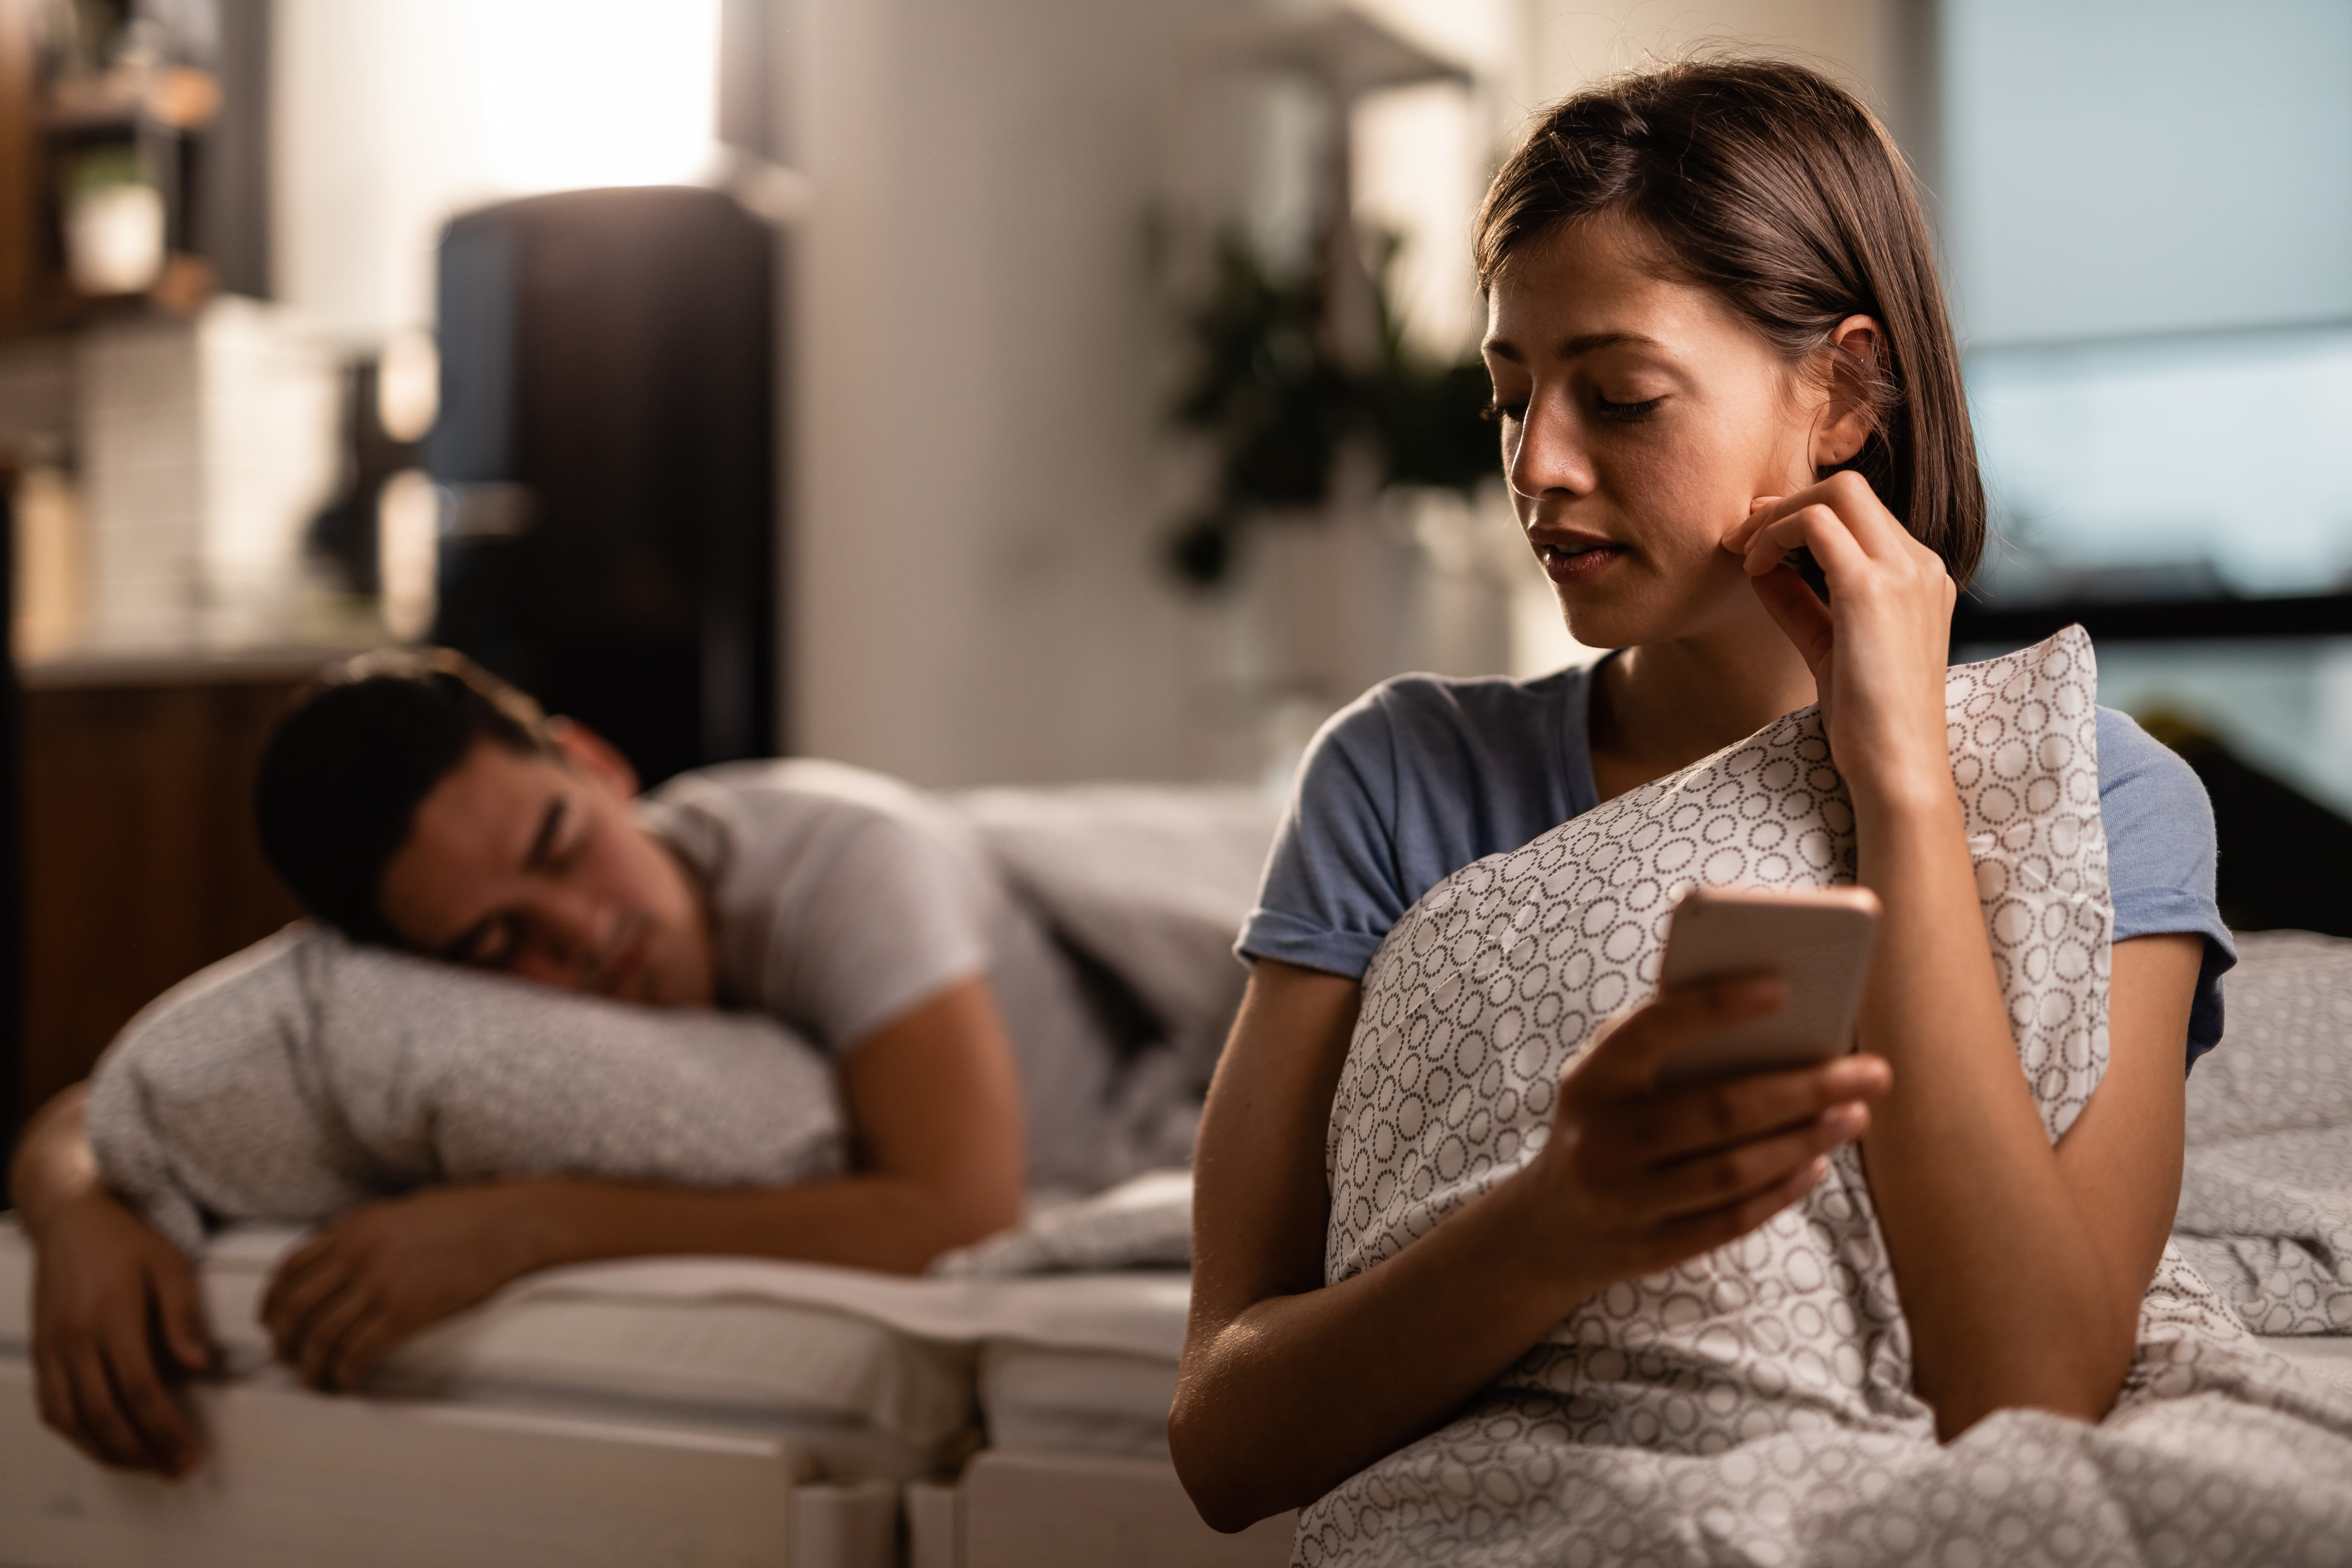 Une femme consulte secrètement son téléphone pendant que son partenaire fait la sieste | Source : Shutterstock